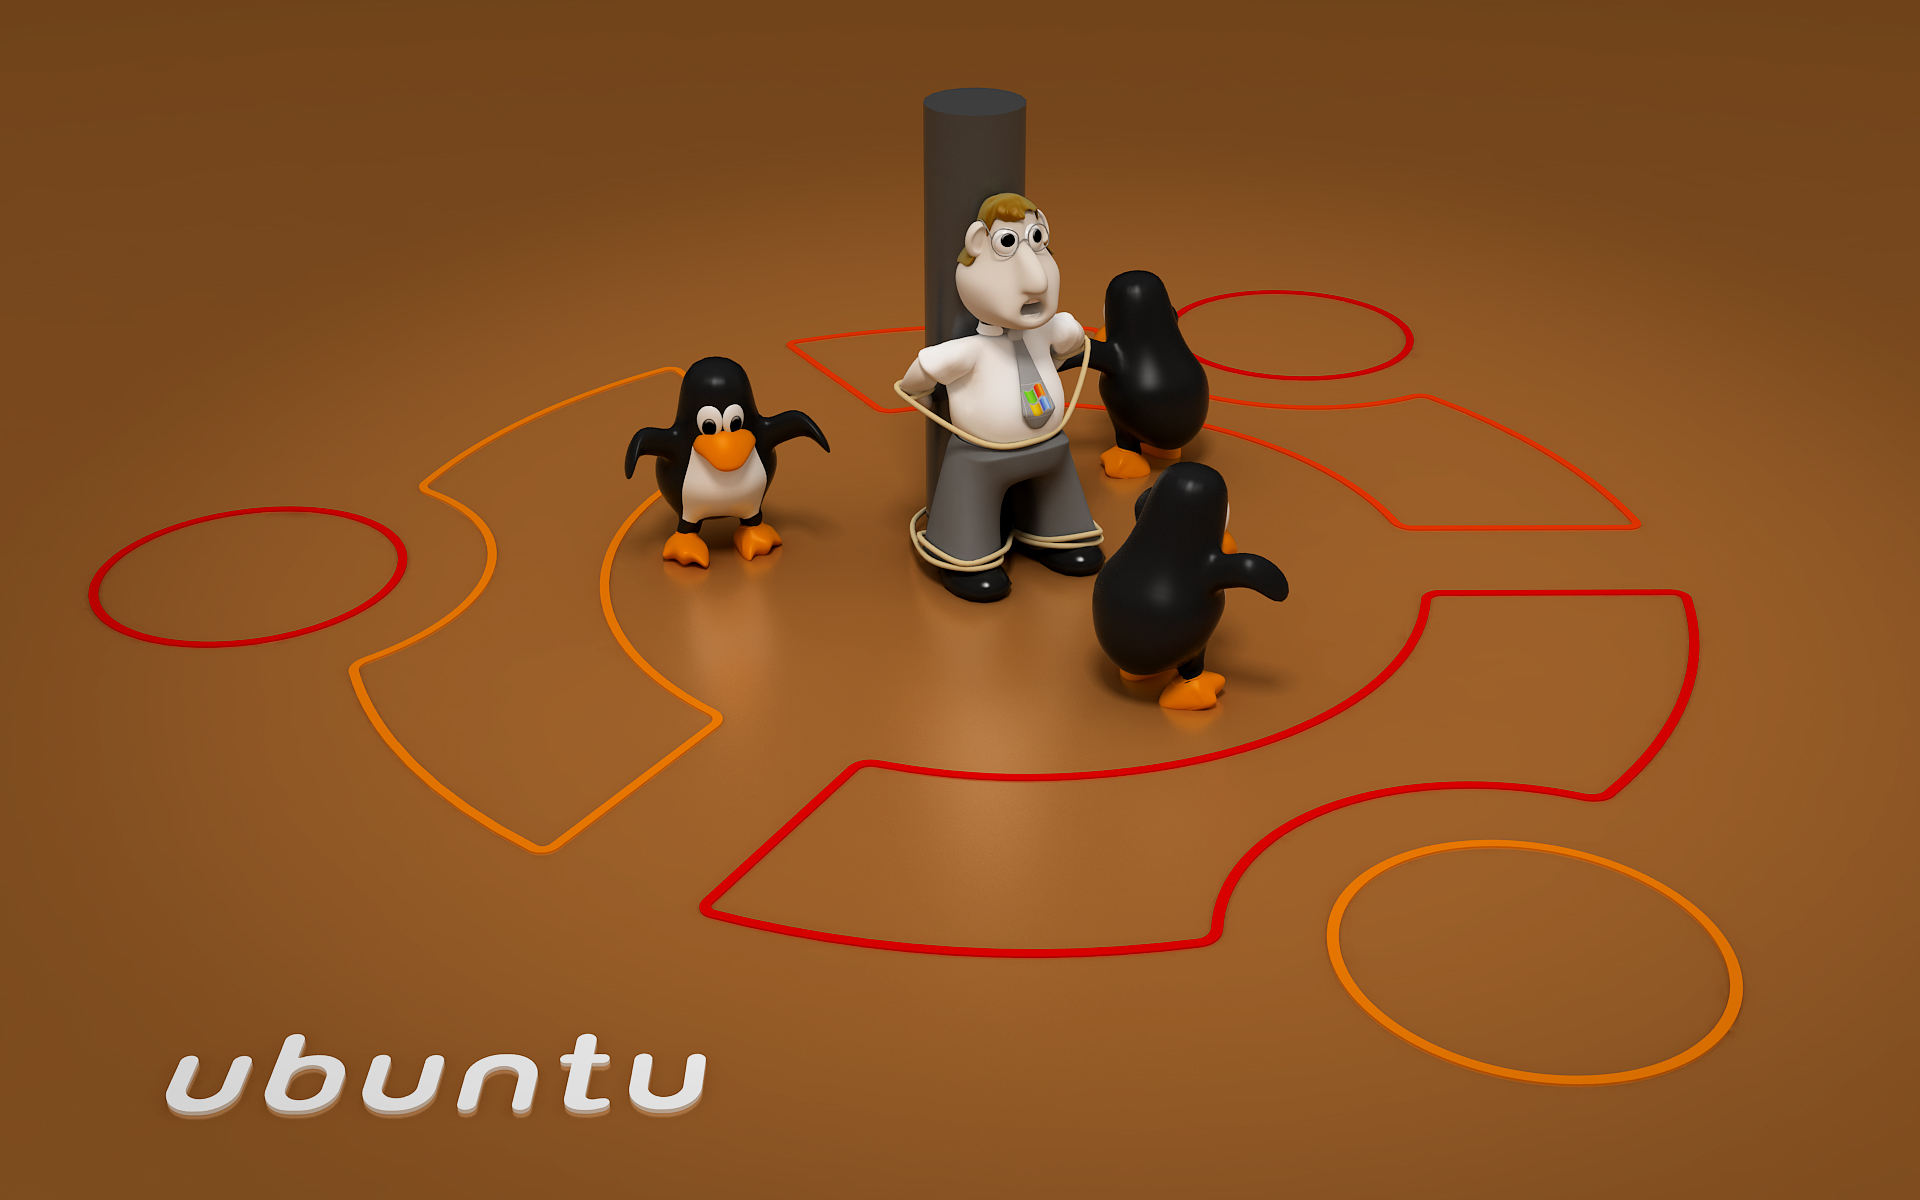 Ubuntu Wallpaper For Desktop And Laptops